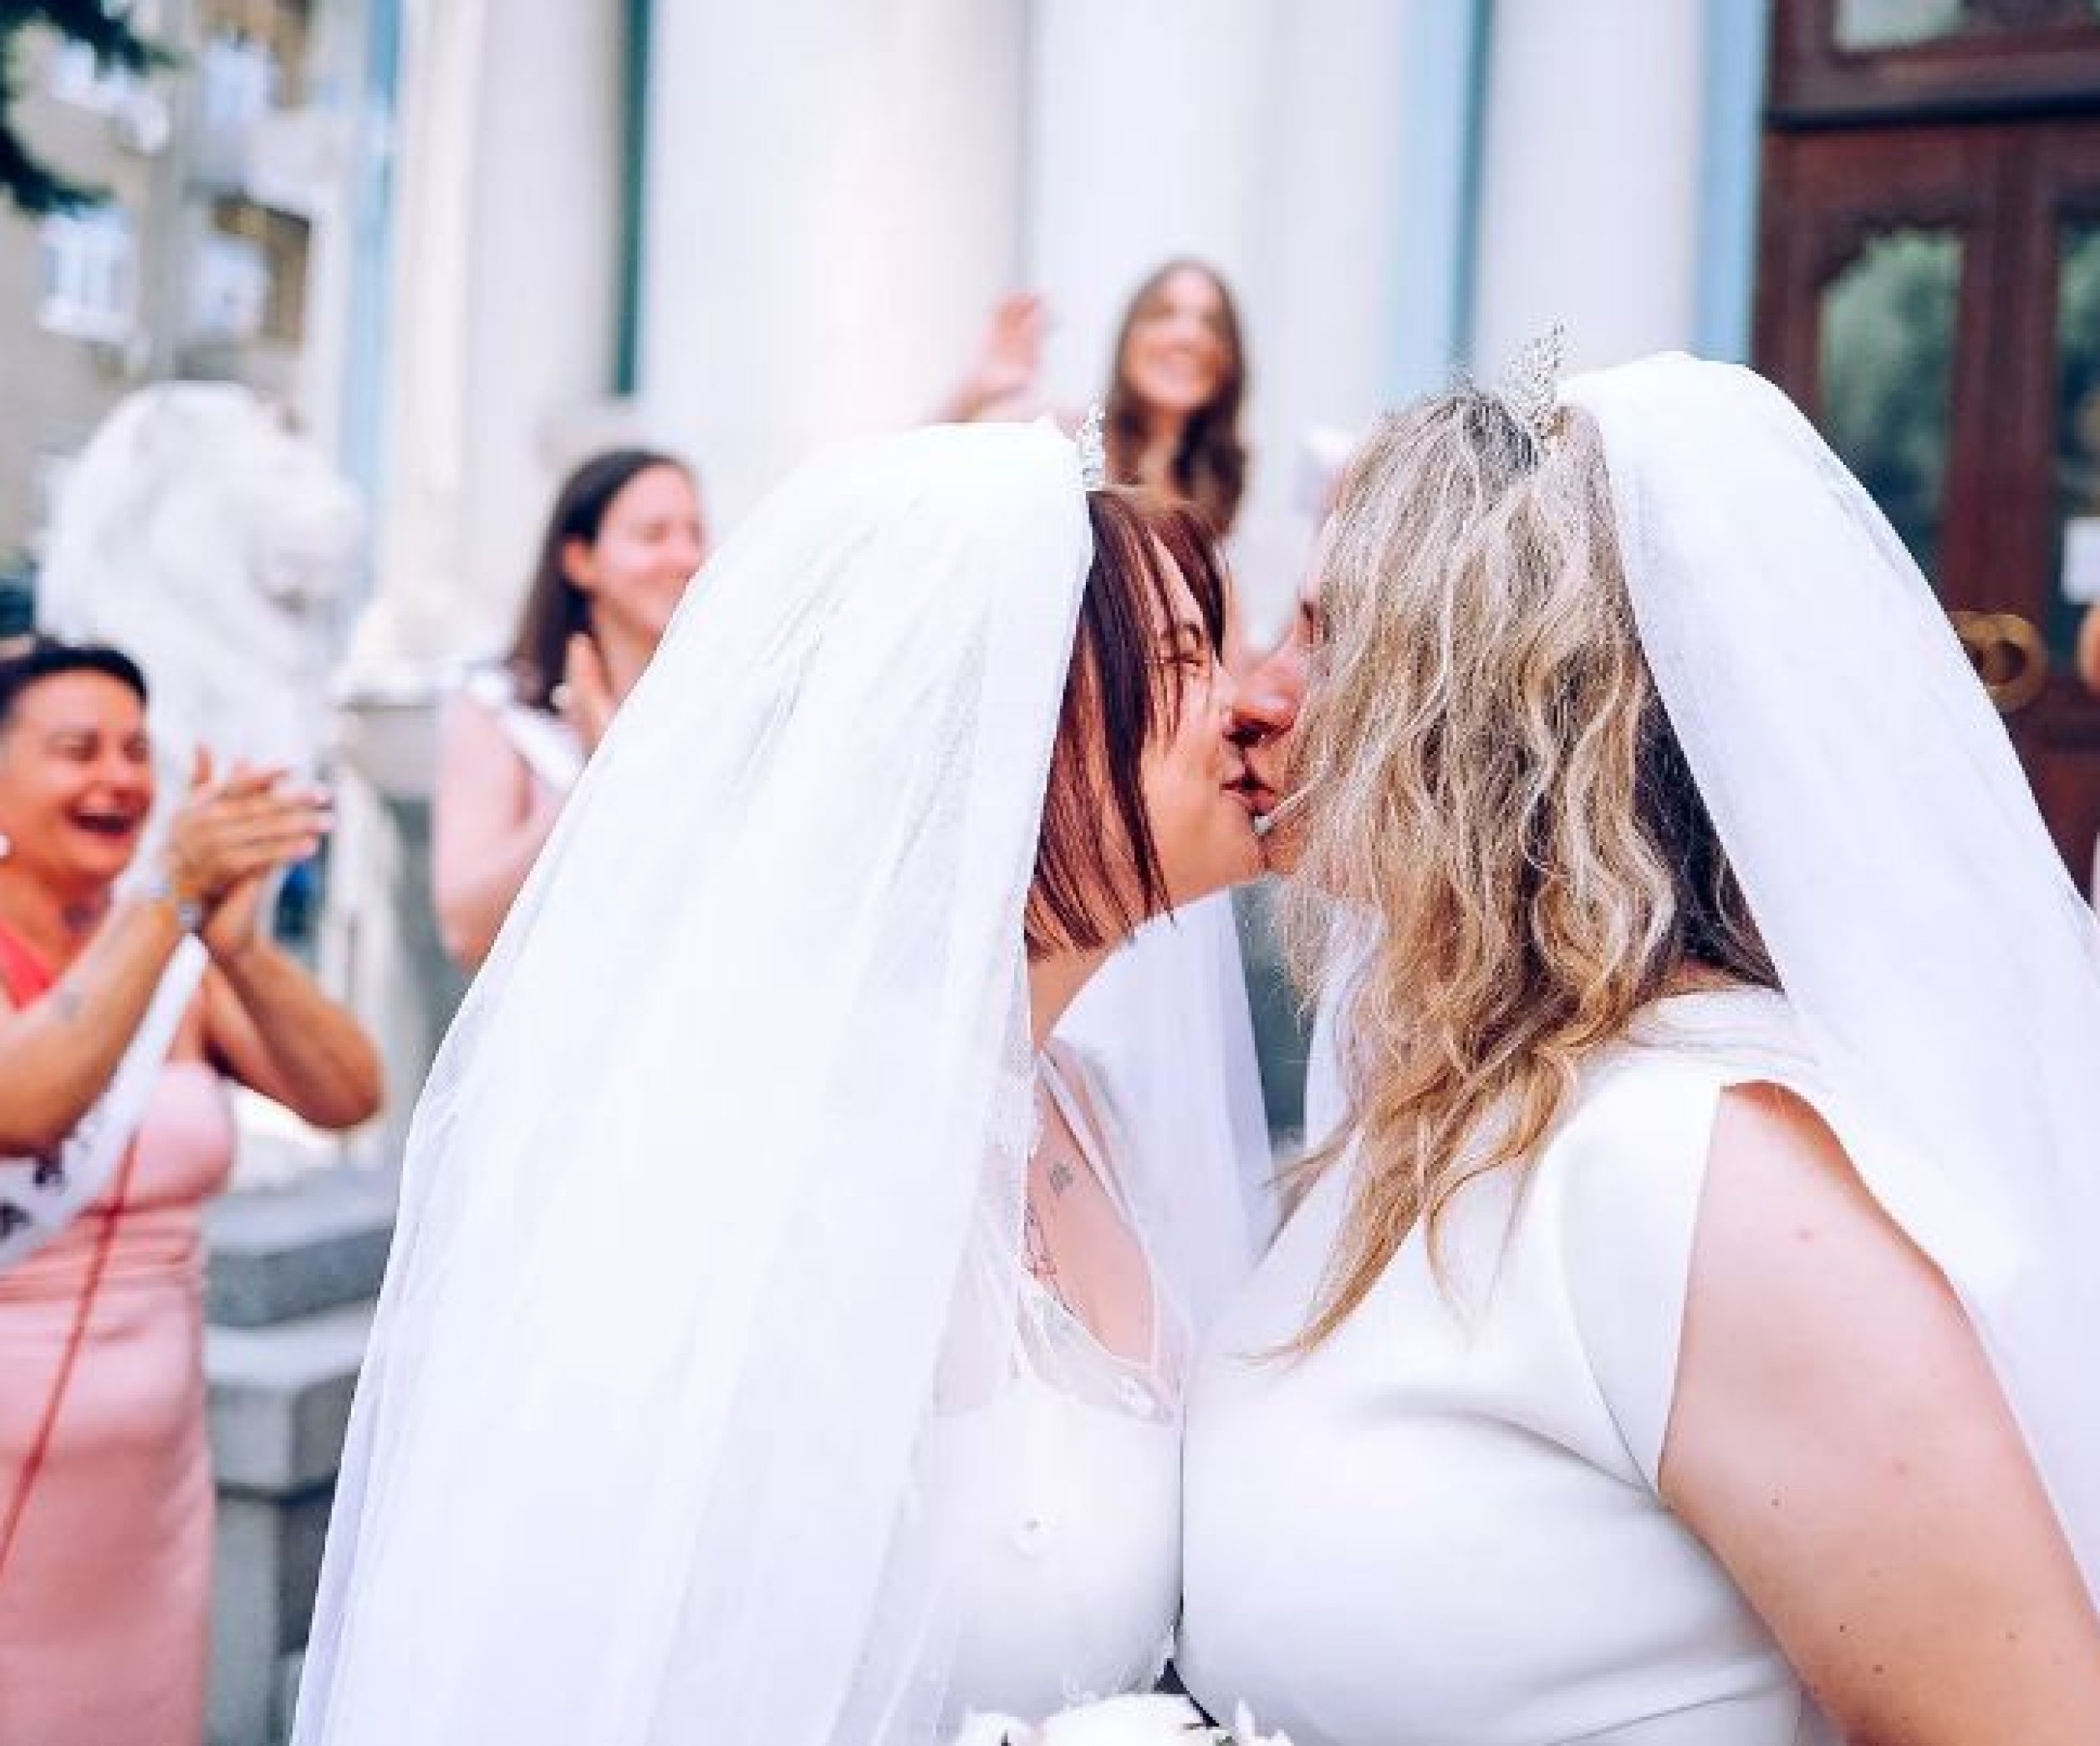 Эпизод с лесбийской свадьбой — Википедия